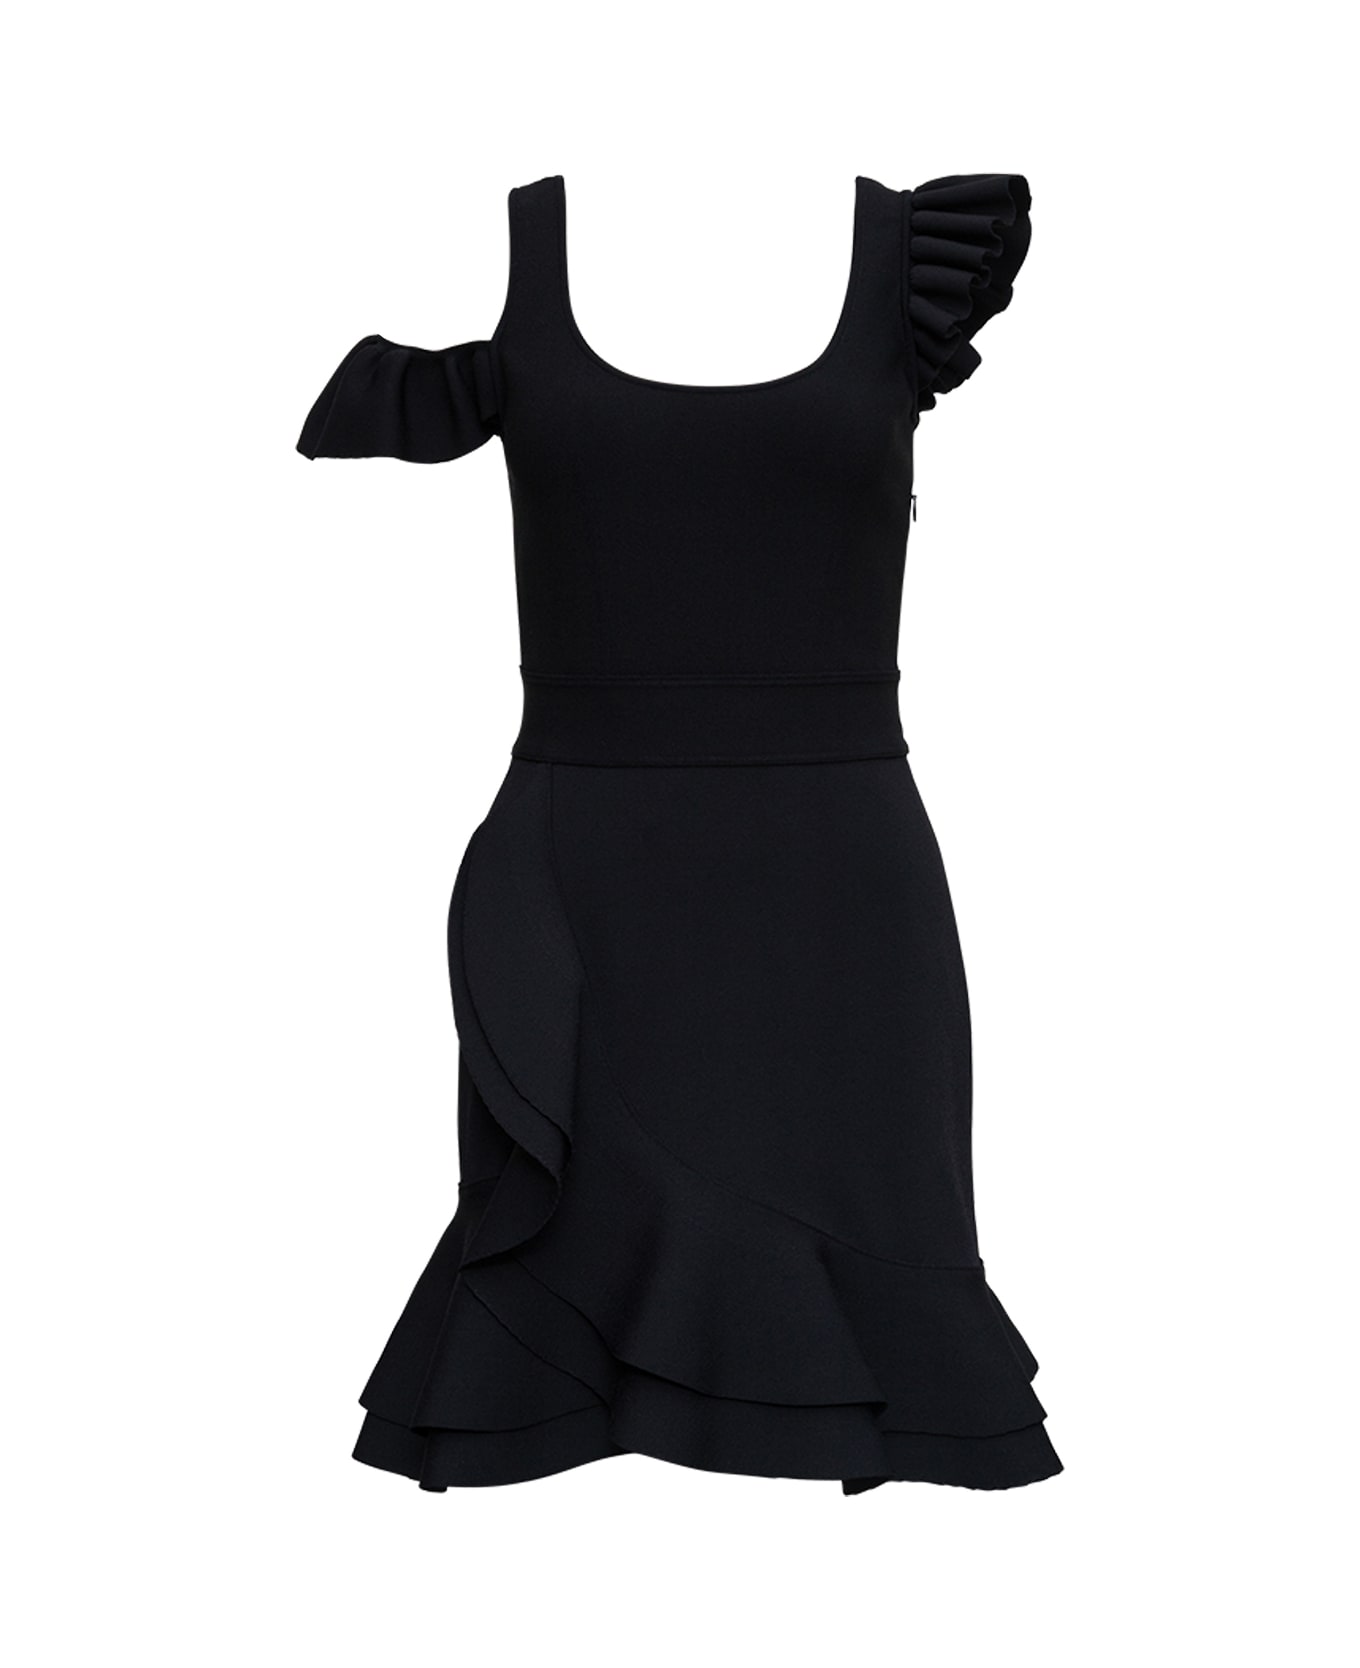 Alexander McQueen Black Viscose Blend Dress With Ruffles - Black